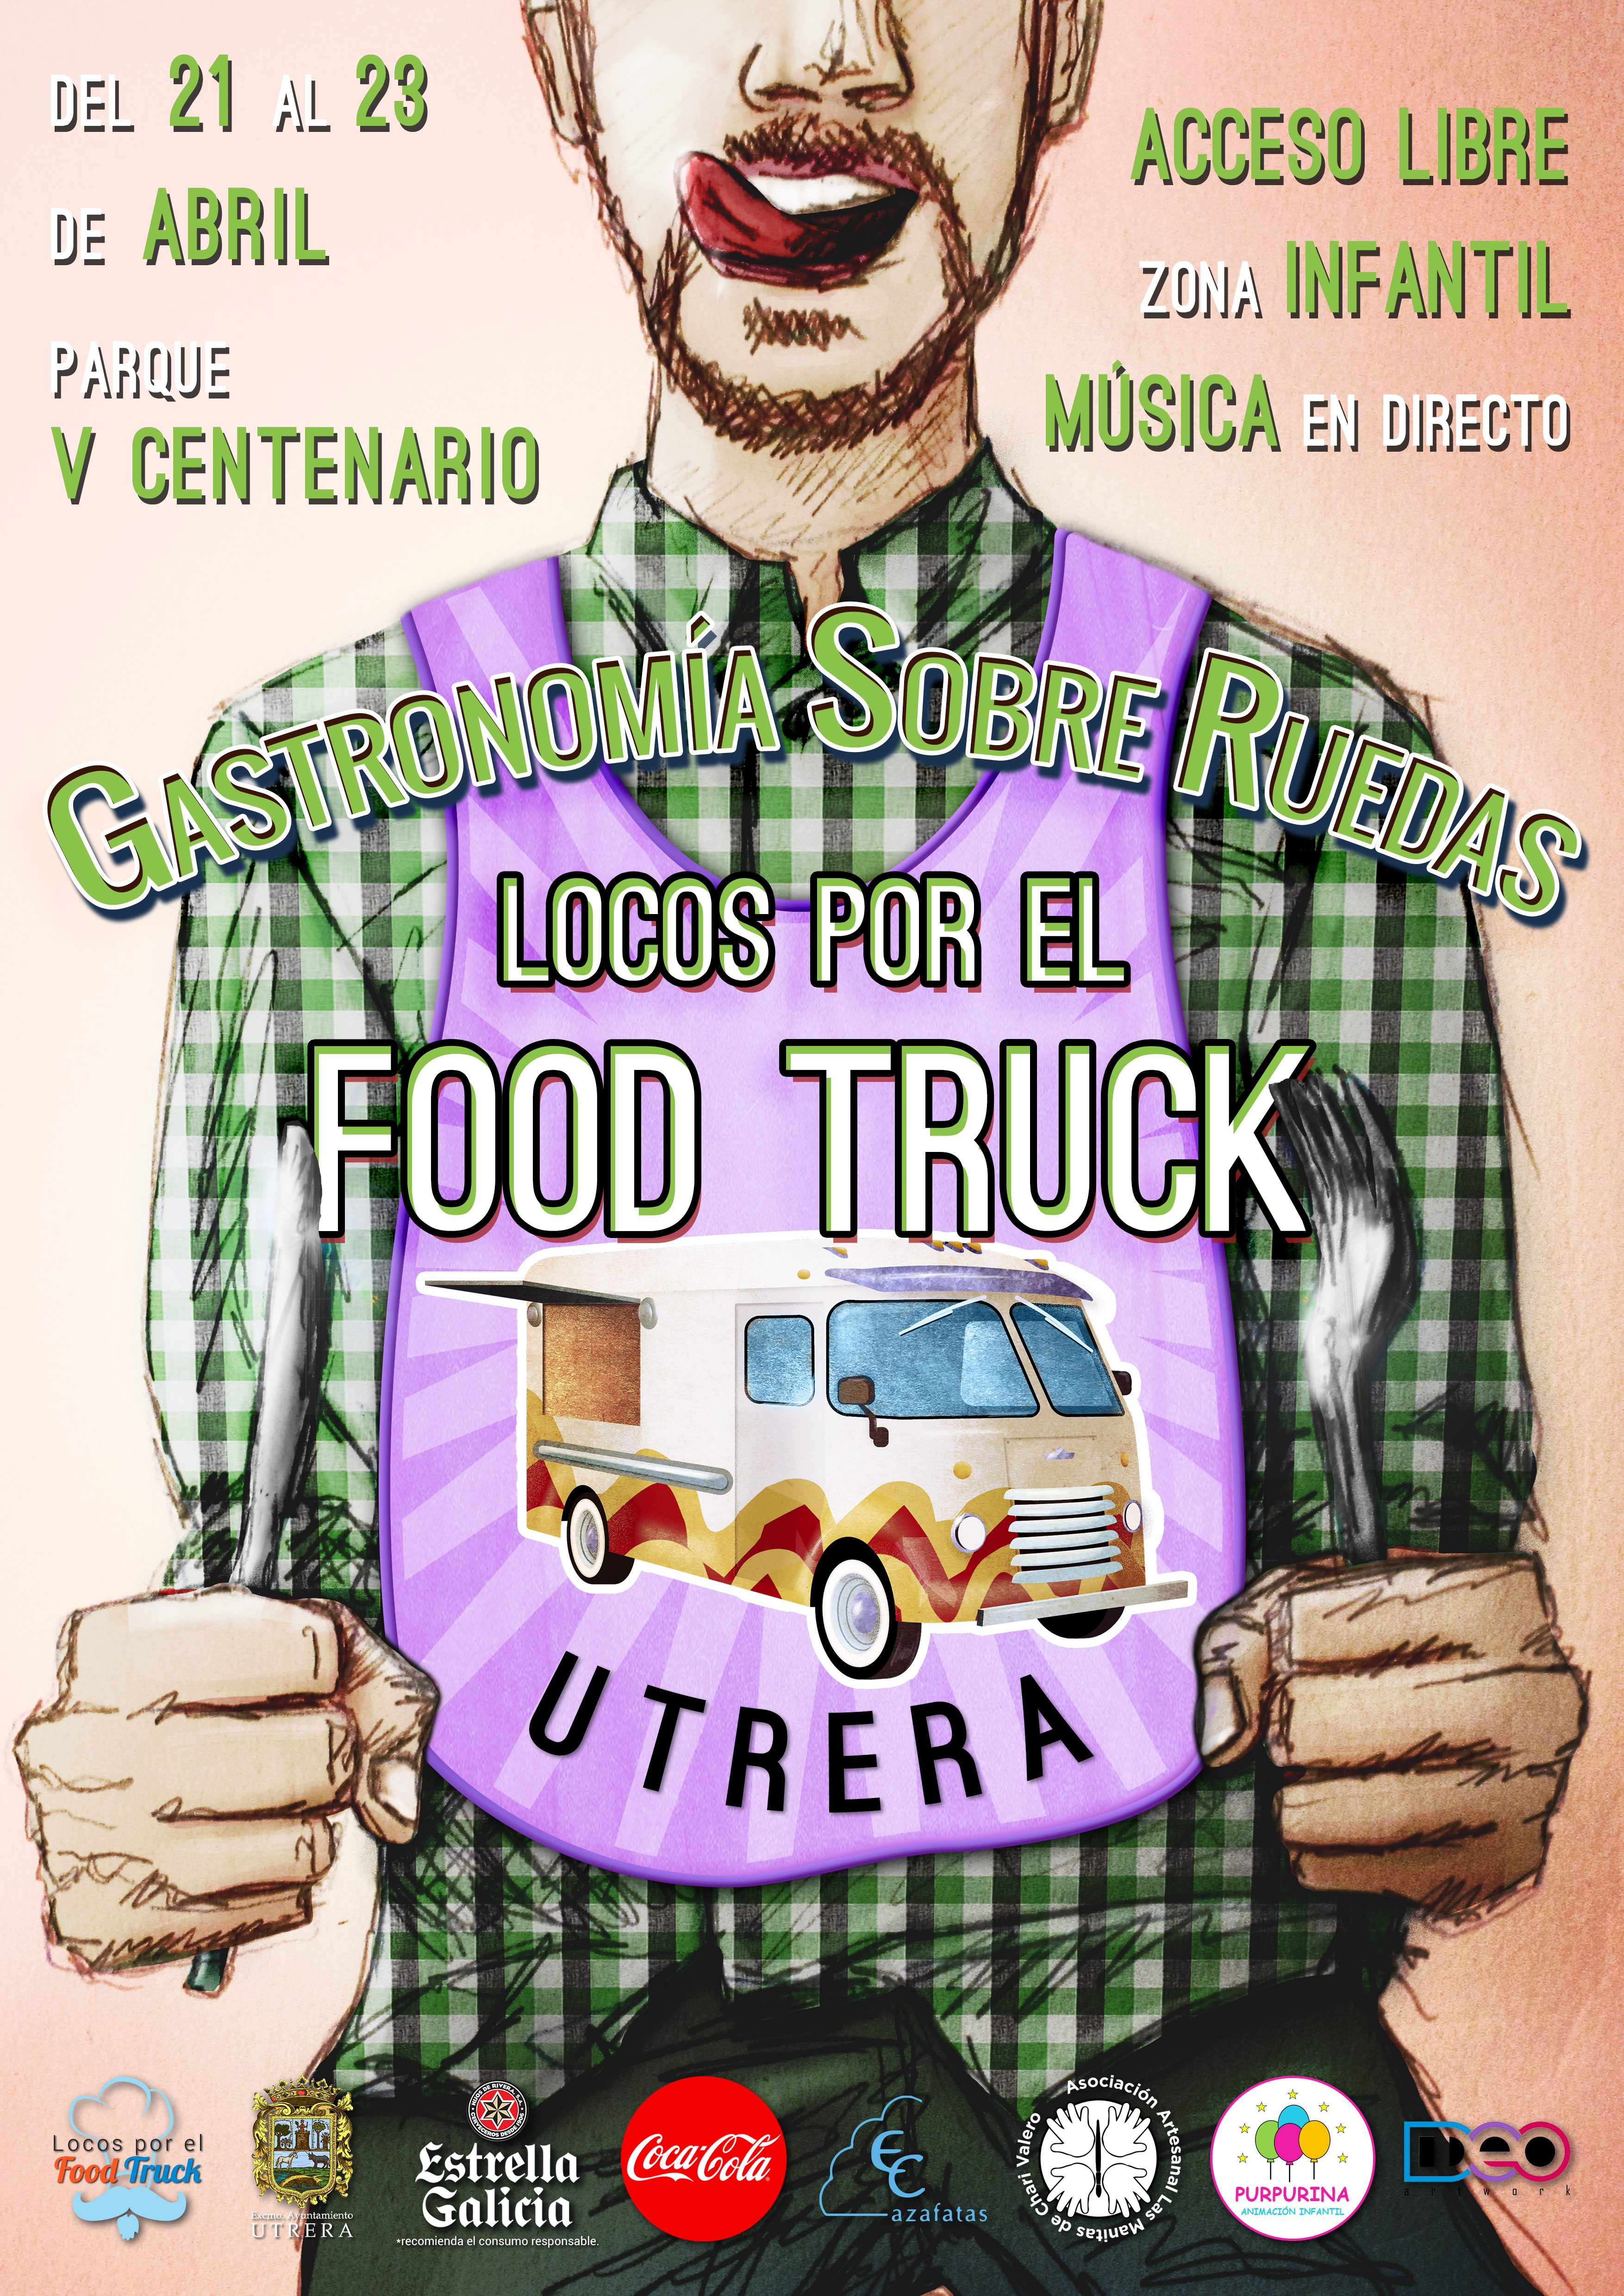 I Locos por el Food Truck Utrera (Sevilla). Abril 2017